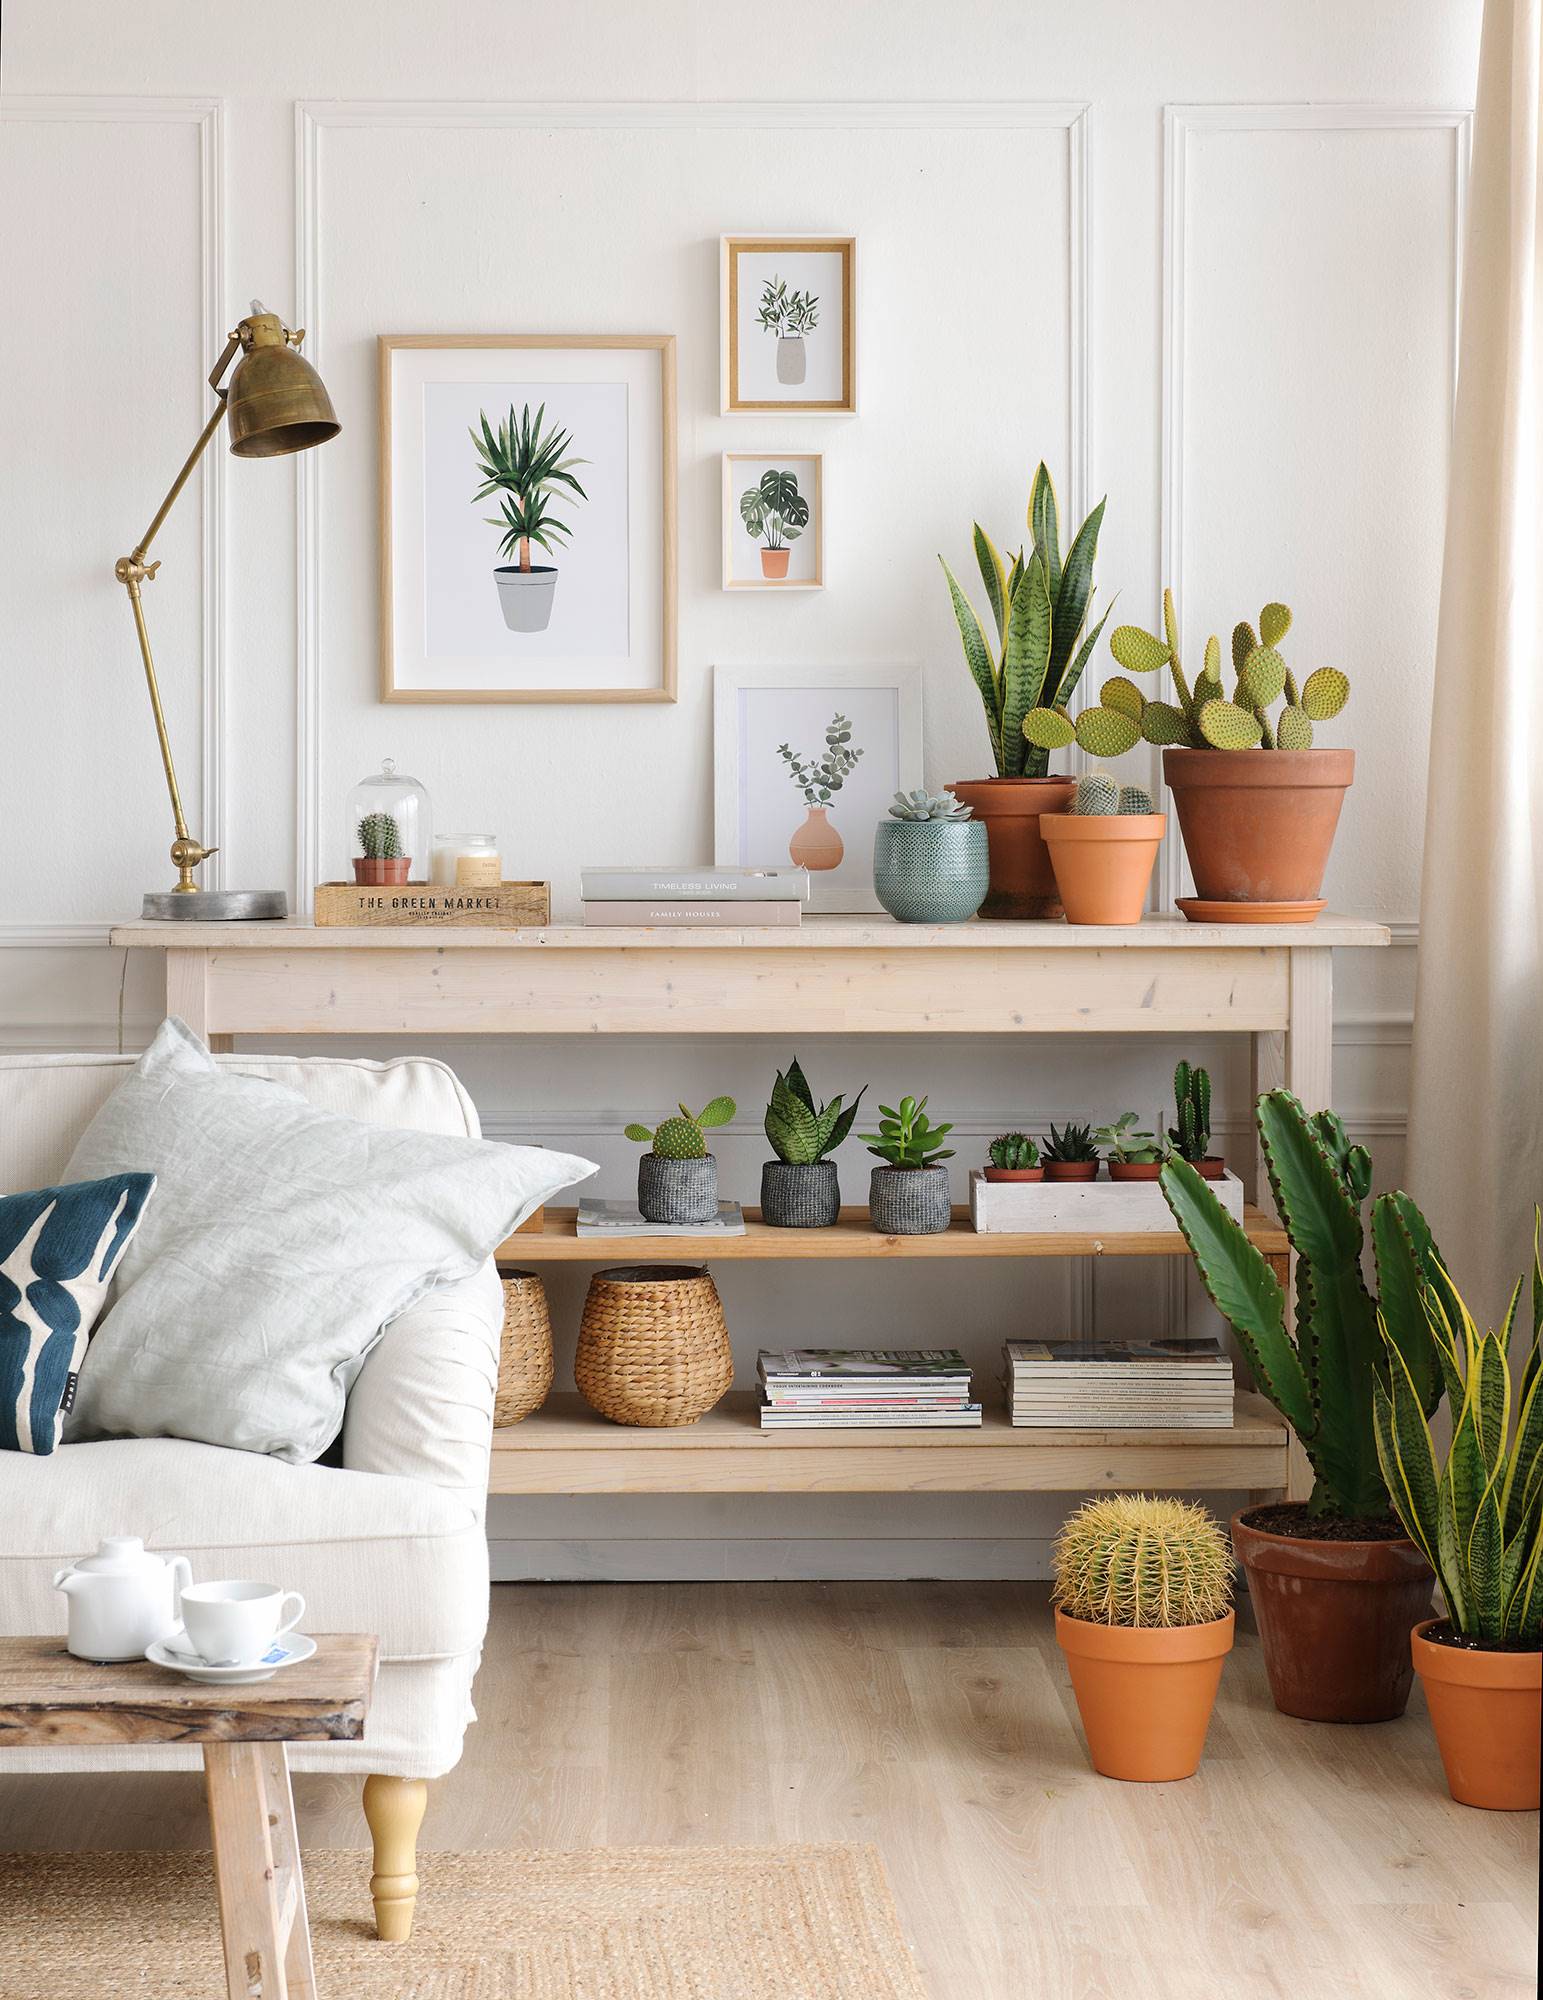 Rincón de salón con mueble en estantes, plantas y composición de cuadros con motivos vegetales